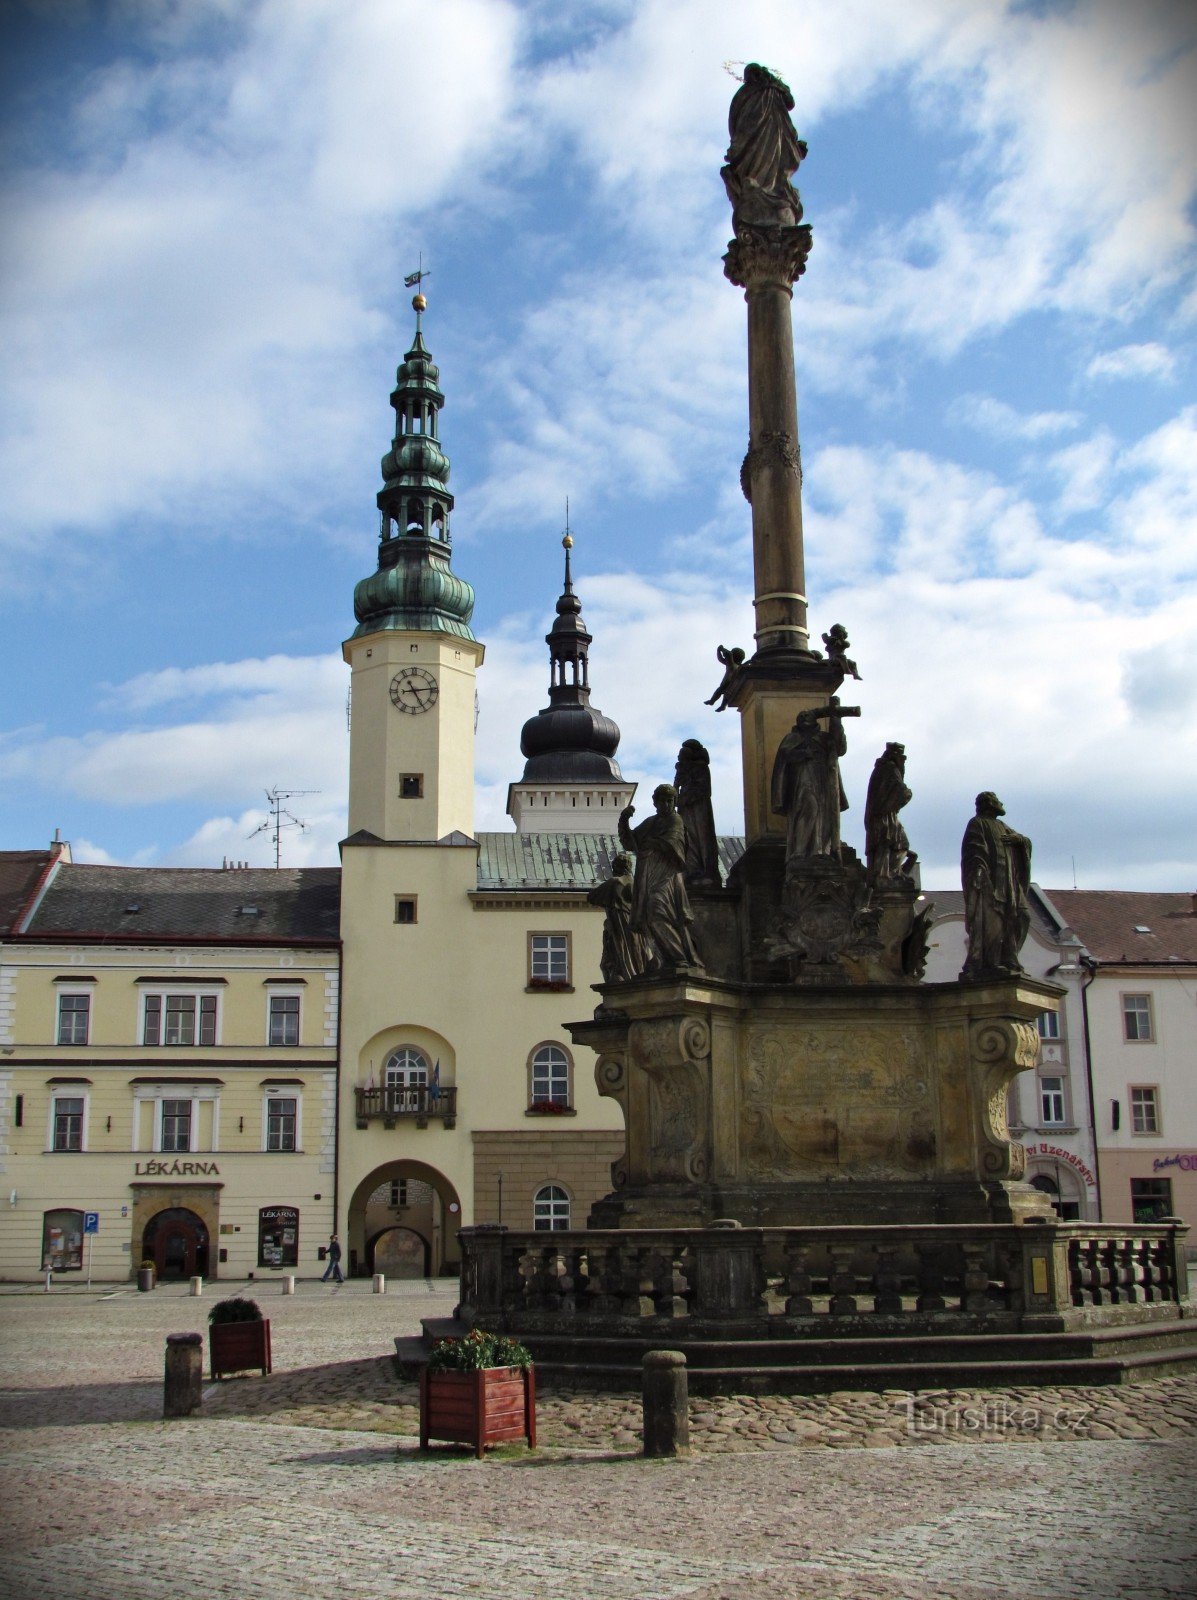 Moravská Třebován aukio ja ripaus renessanssia